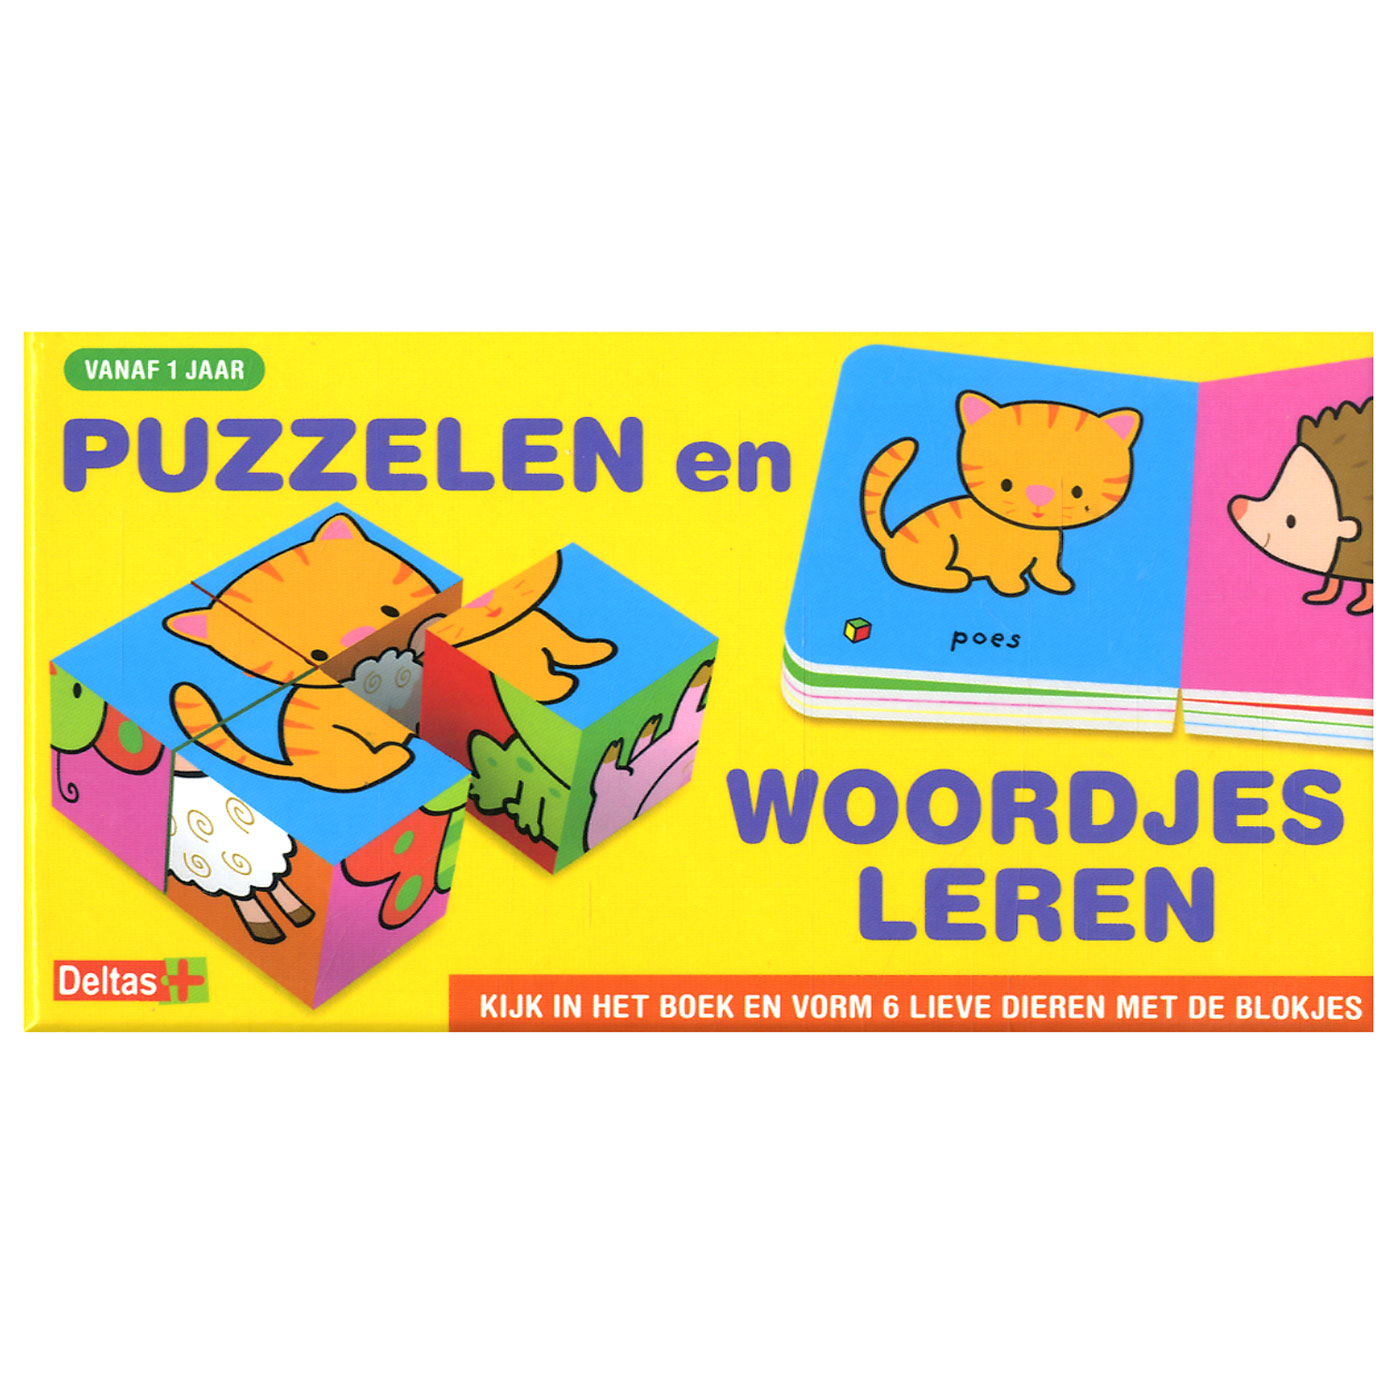 Puzzelen en woordjes leren (vanaf 1 jaar)